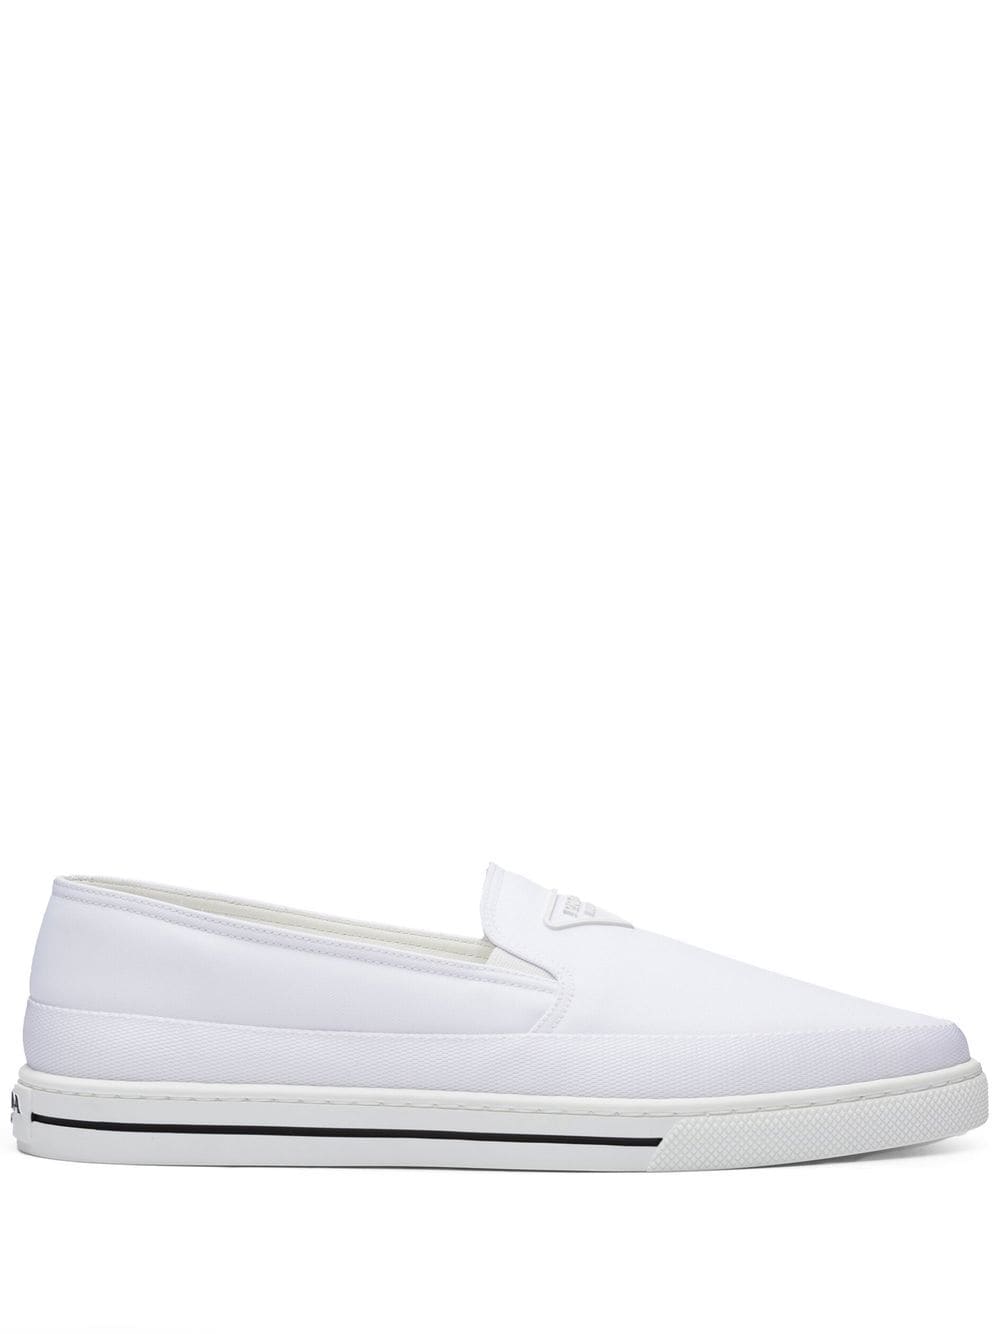 Prada Nylon Slip-on Sneakers In White